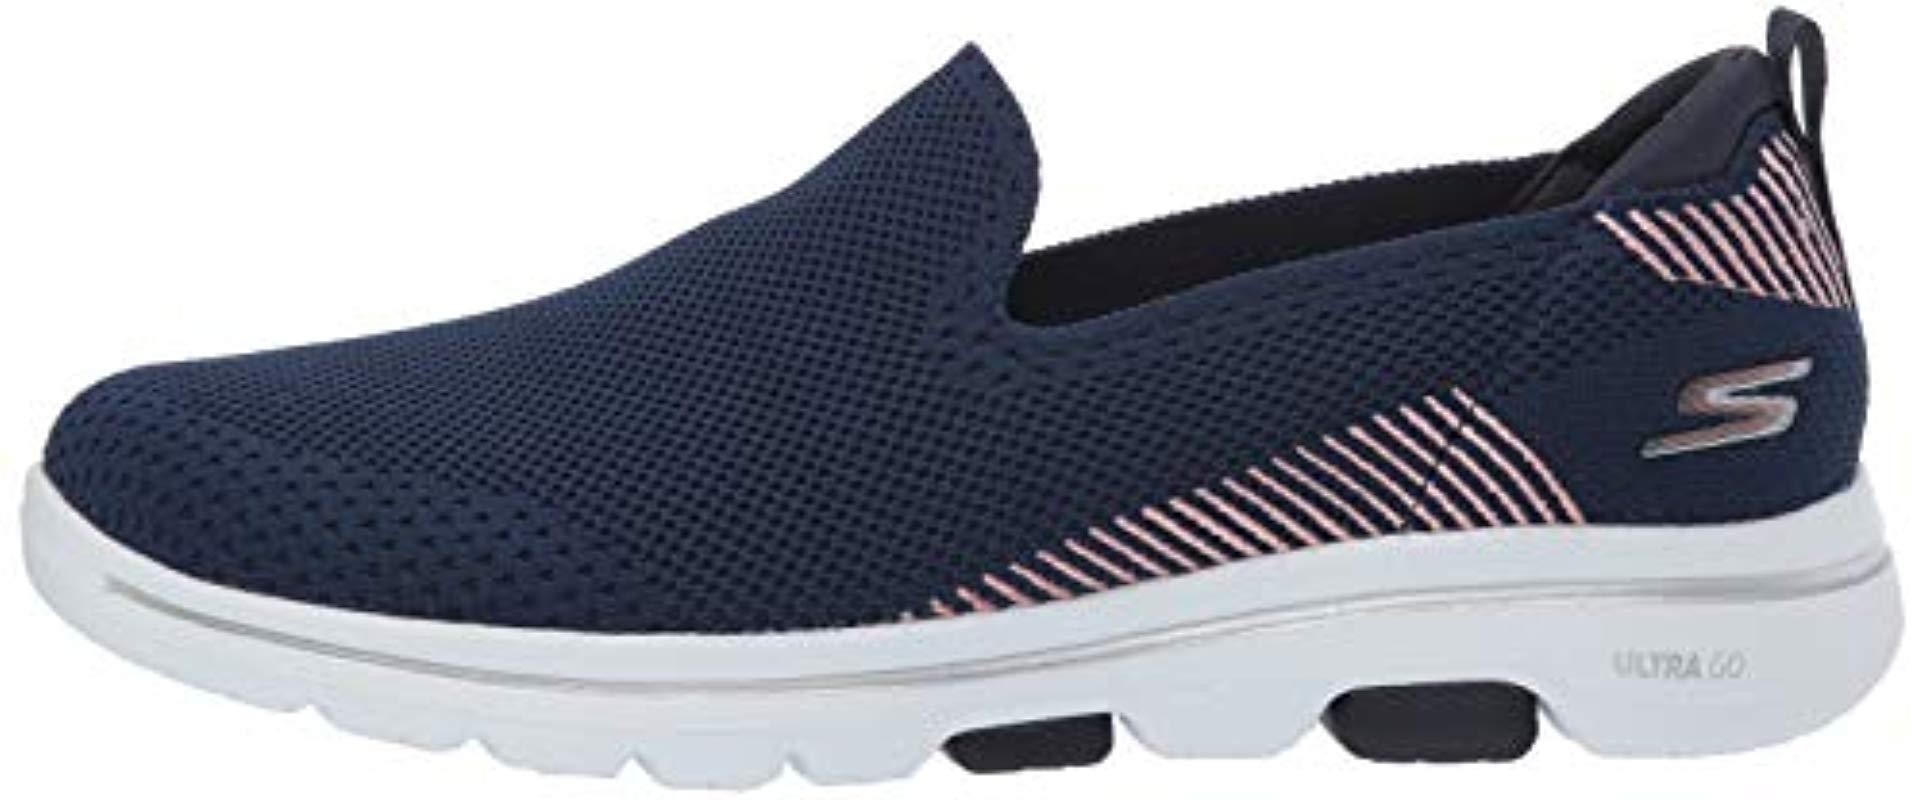 Skechers Go Walk 5-prized Sneaker in Navy (Blue) - Save 79% | Lyst UK